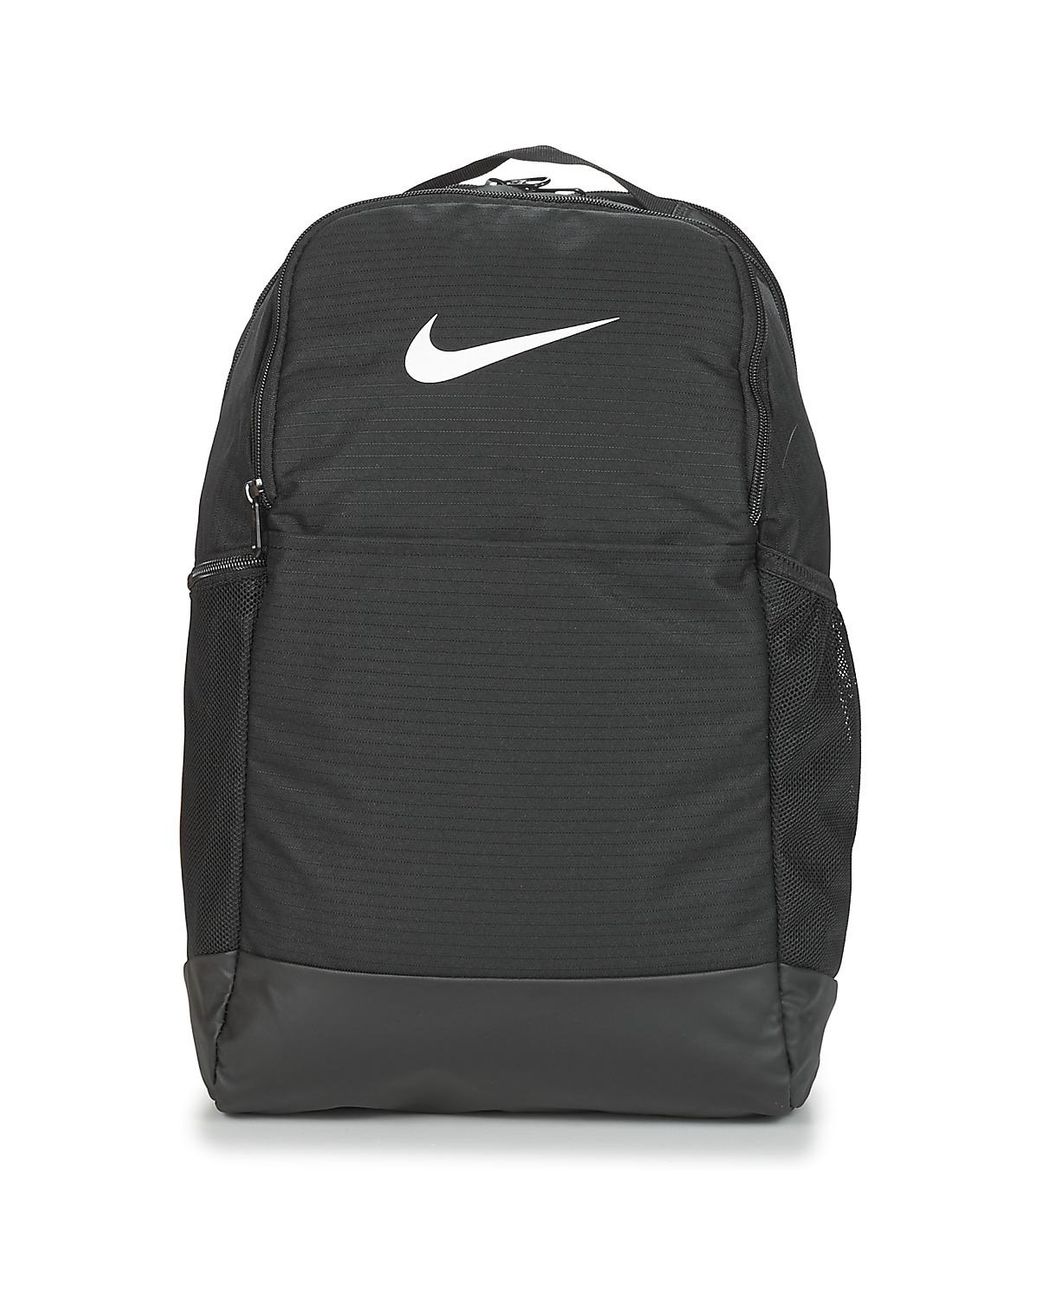 Nike Nk Brsla M Bkpk - 9.0 (24l) Backpack in Black - Lyst